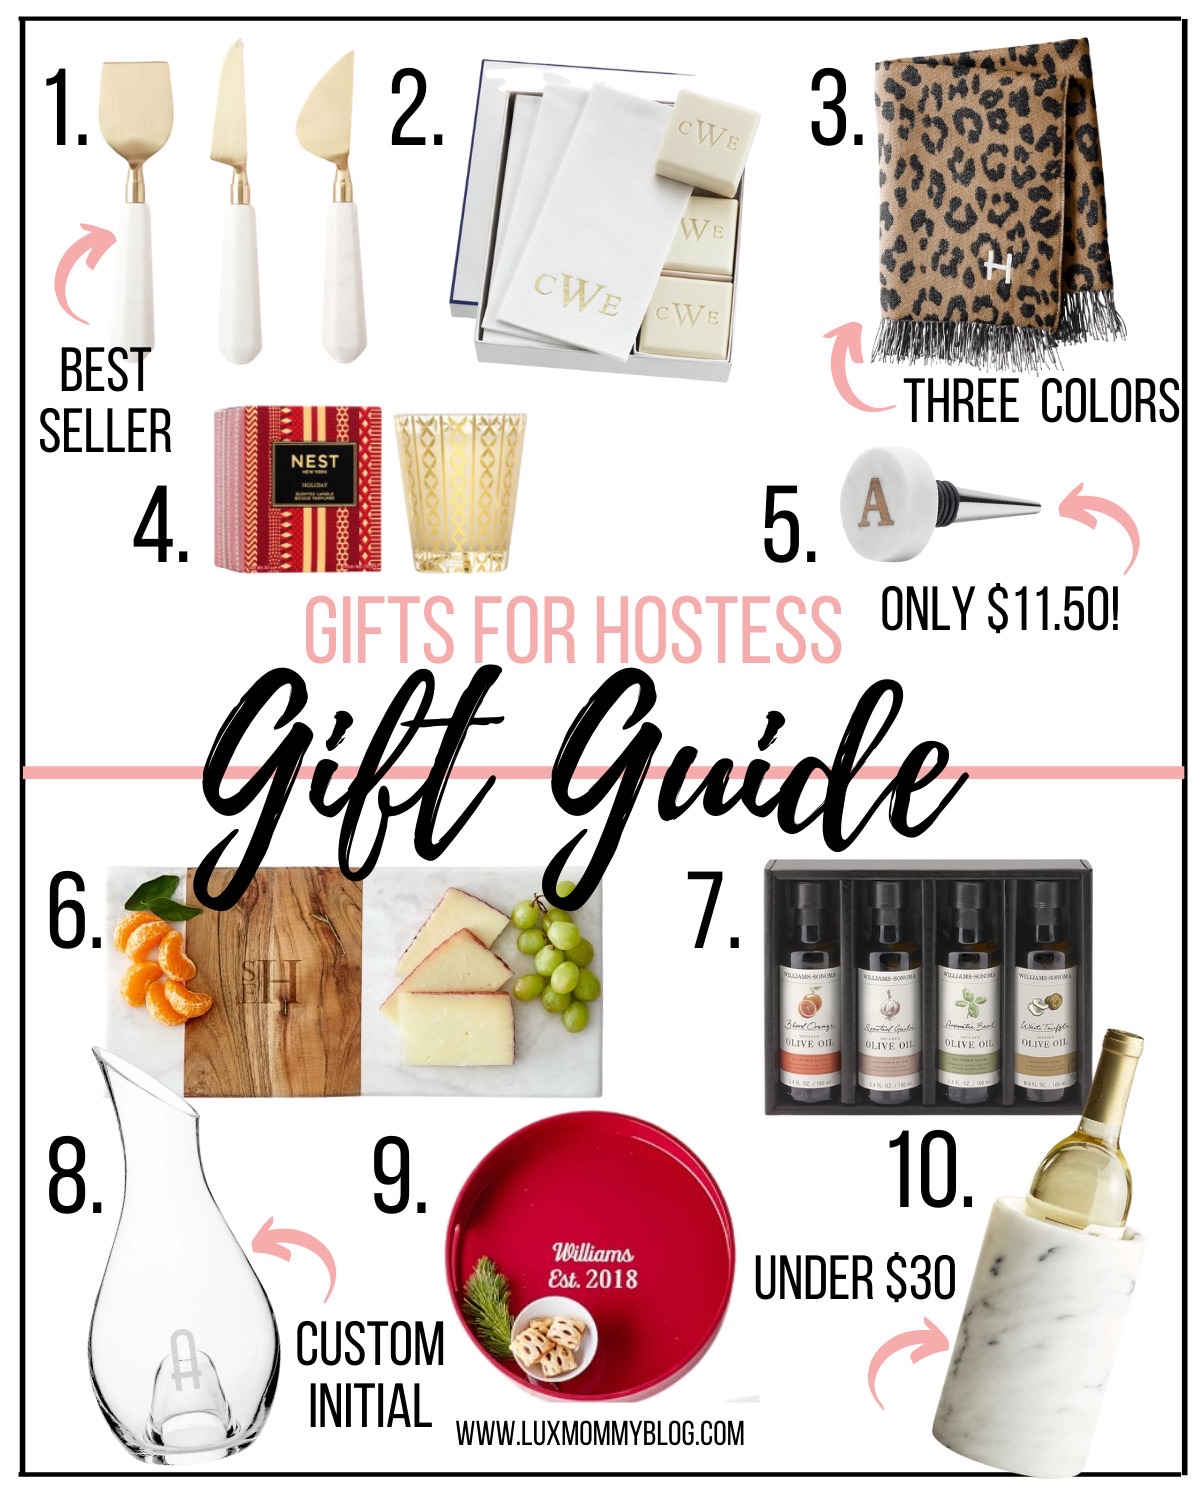 gift guide for hostessa